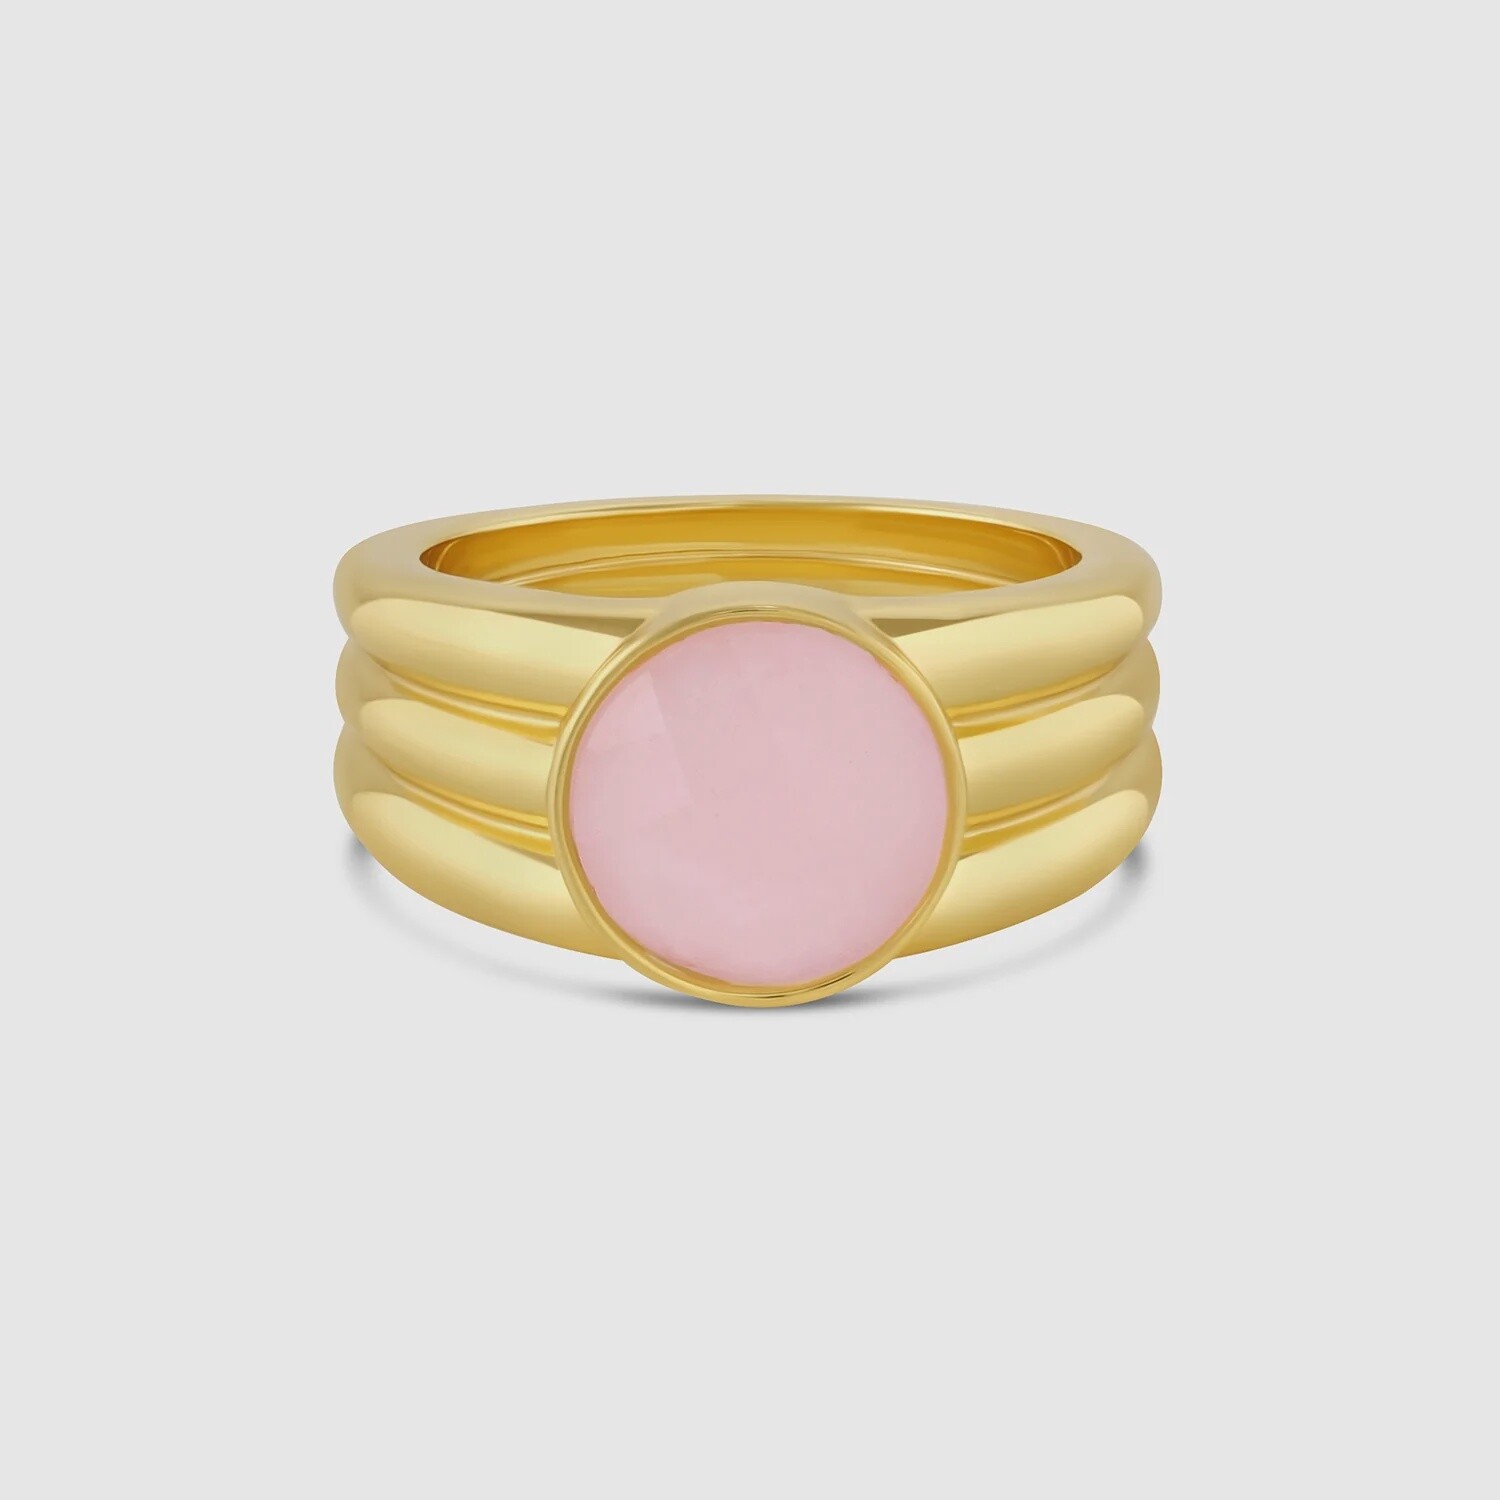 Power Gemstone Ring for Love - Gold / Rose Quartz / 7